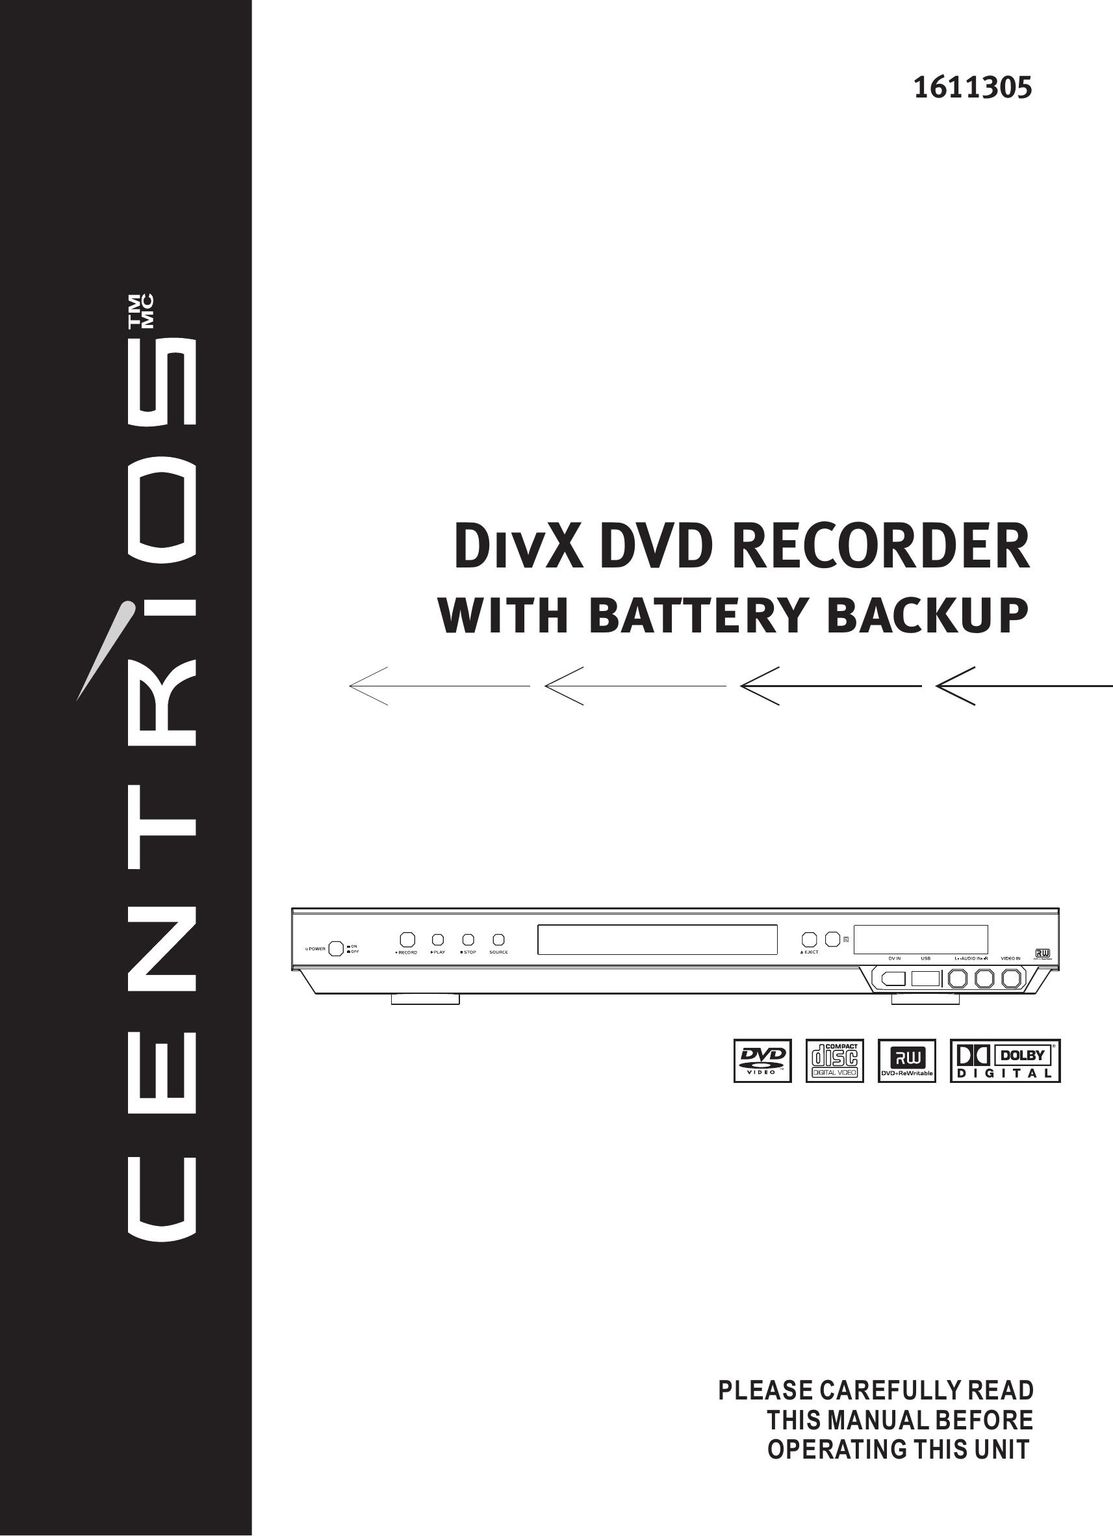 Centrios 1611305 DVD Recorder User Manual